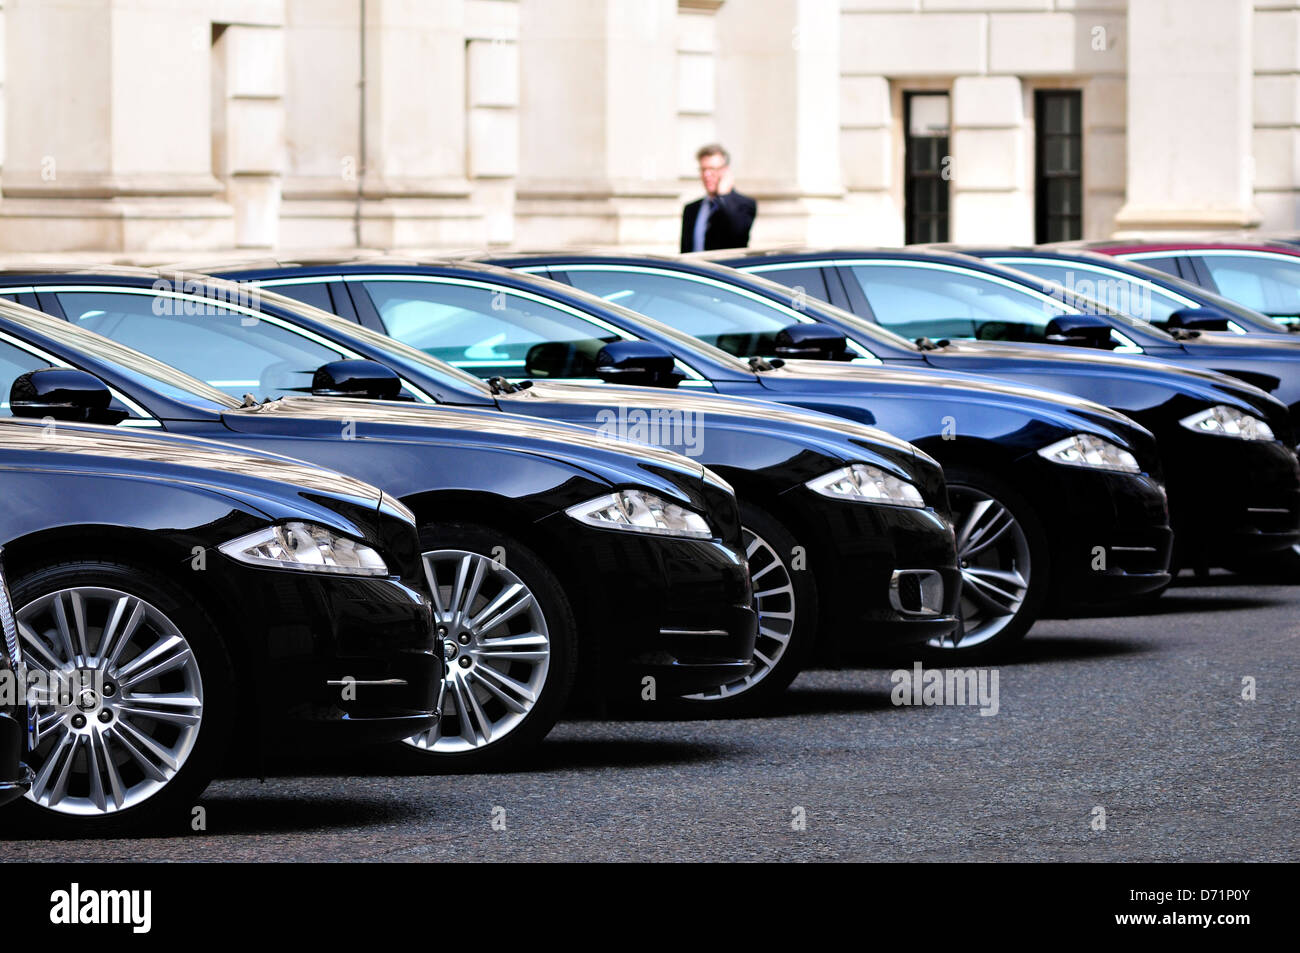 Londres, Inglaterra, Reino Unido. King Charles Street. Los coches oficiales del gobierno (Jaguar), estacionado por el Foreign Office Foto de stock